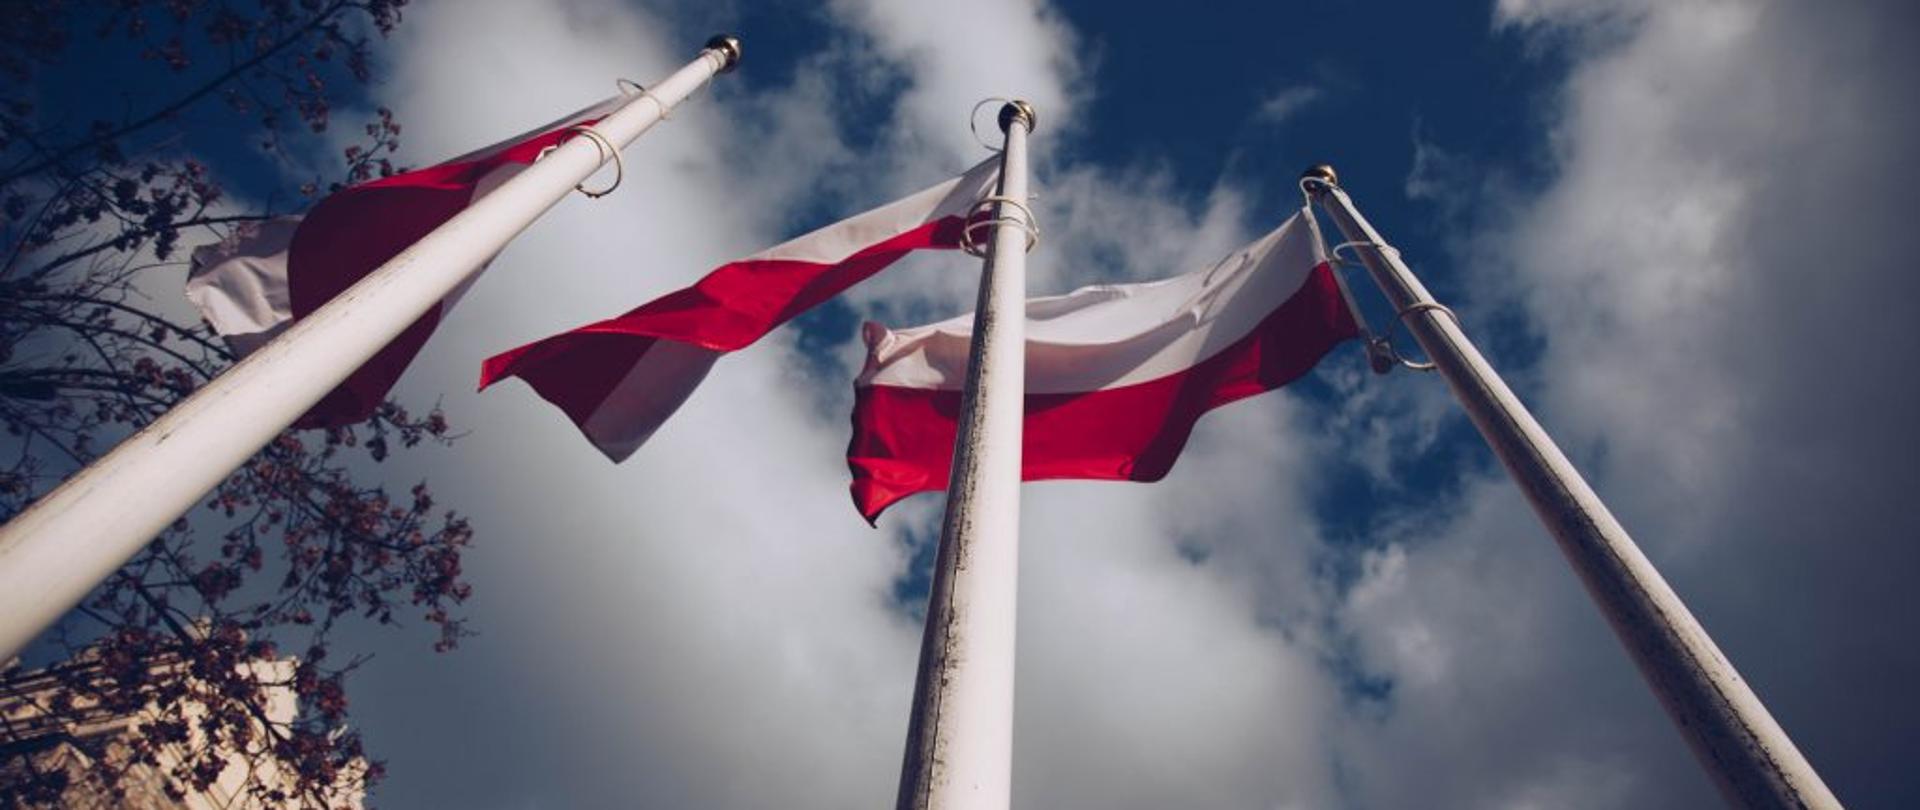 Na trzech białych masztach powiewają polskie flagi narodowe. Widok od dołu - od stóp masztów. W tle częściowo zachmurzone niebo, a po lewej stronie bezlistne gałęzie drzewa oraz fragment krapkowickiej baszty.